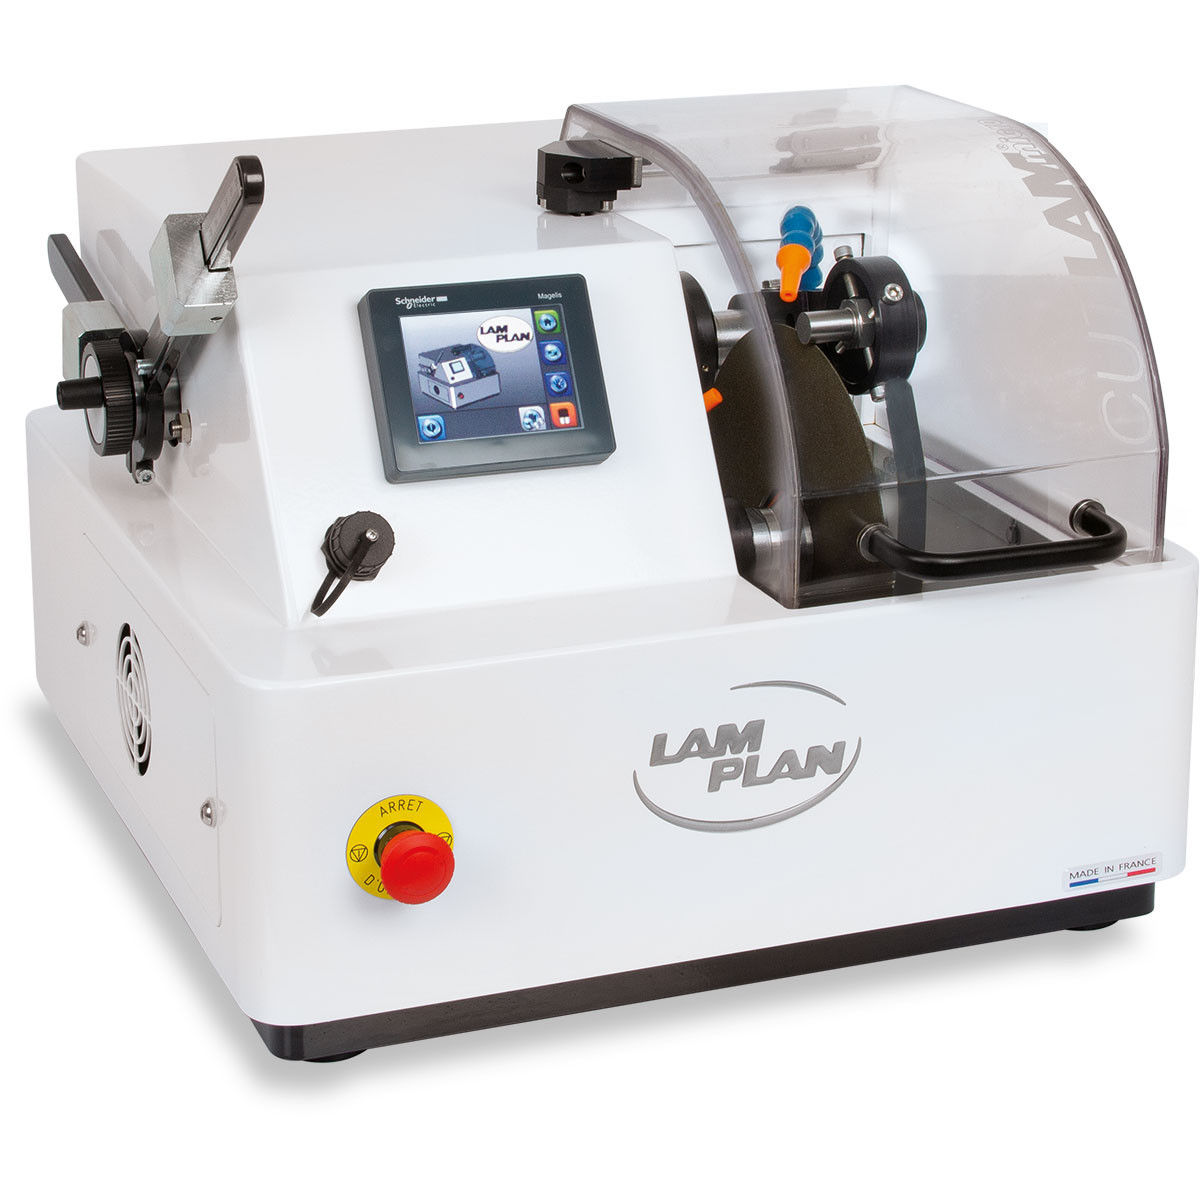 เครื่องตัดละเอียดสำหรับห้องปฏิบัติการ (Laboratory Precision Micro Cutting Machine) ยี่ห้อ Lam Plan รุ่น CUTLAM micro®2.0 (SIT189)